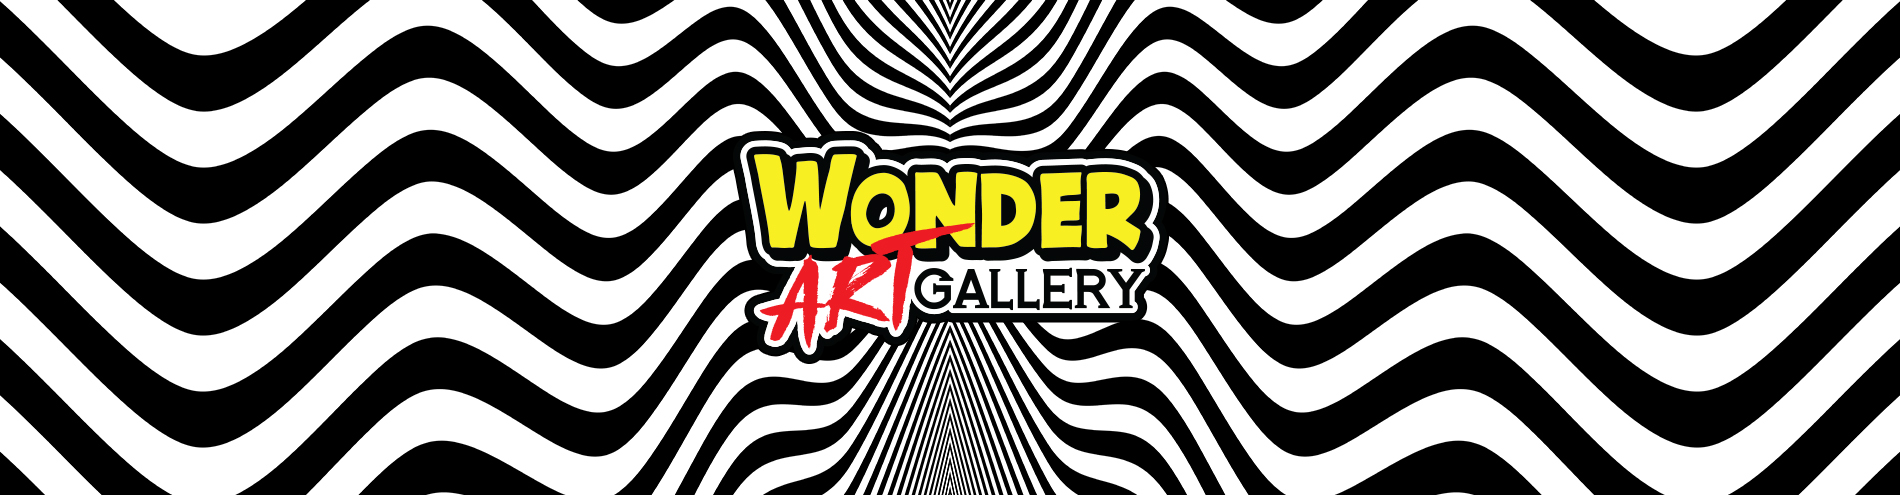 Wonder Art Gallery Header